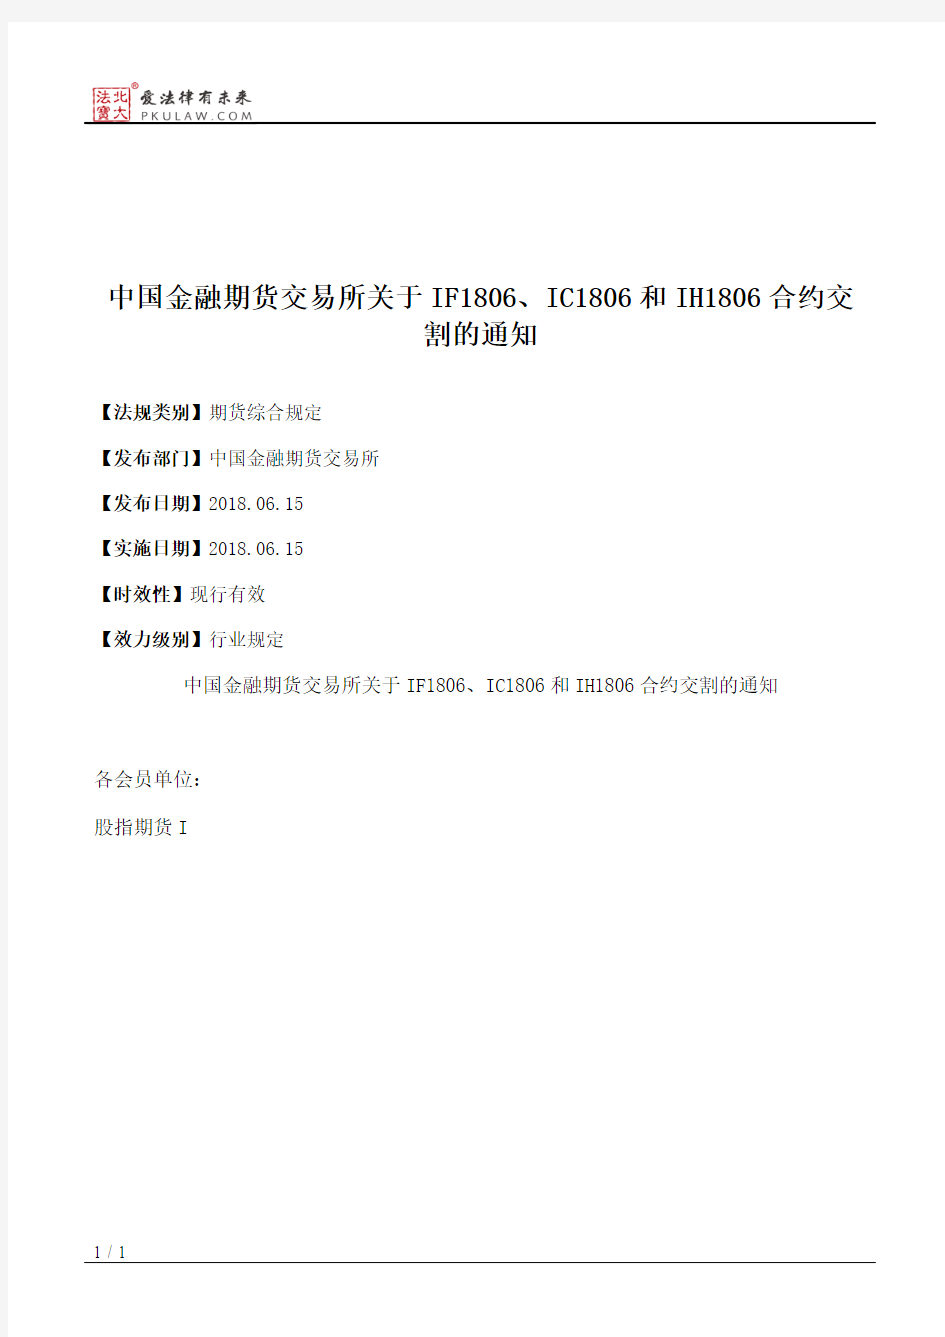 中国金融期货交易所关于IF1806、IC1806和IH1806合约交割的通知